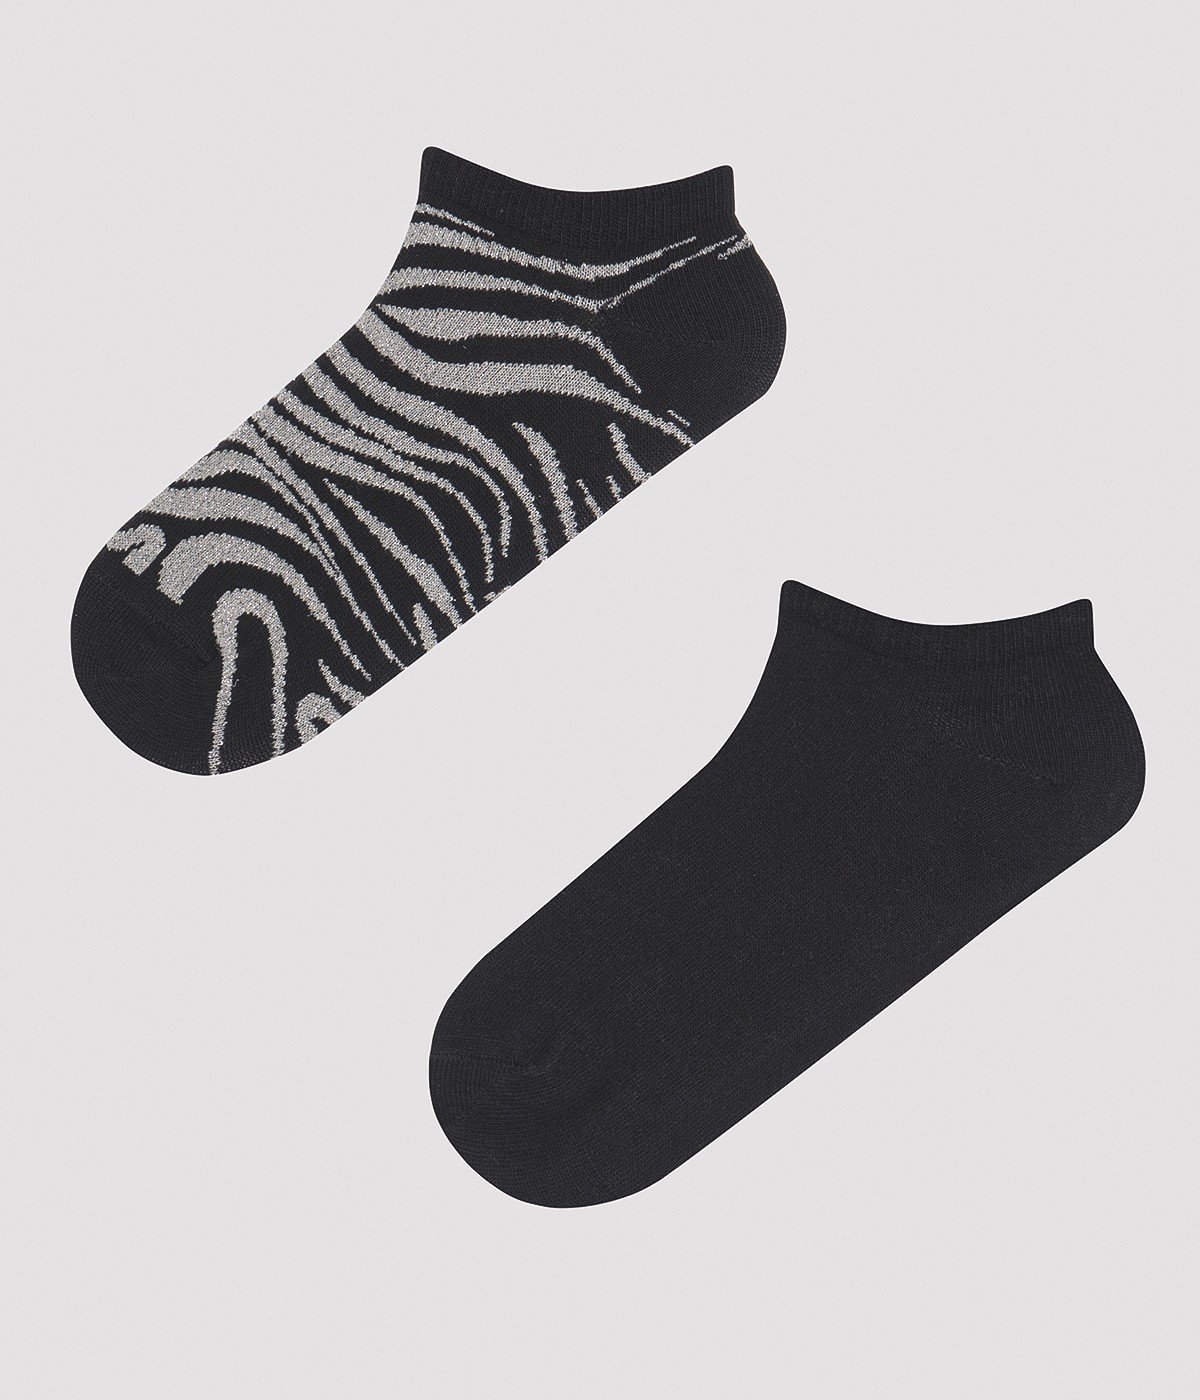 Zebra 2in1 Liner Socks